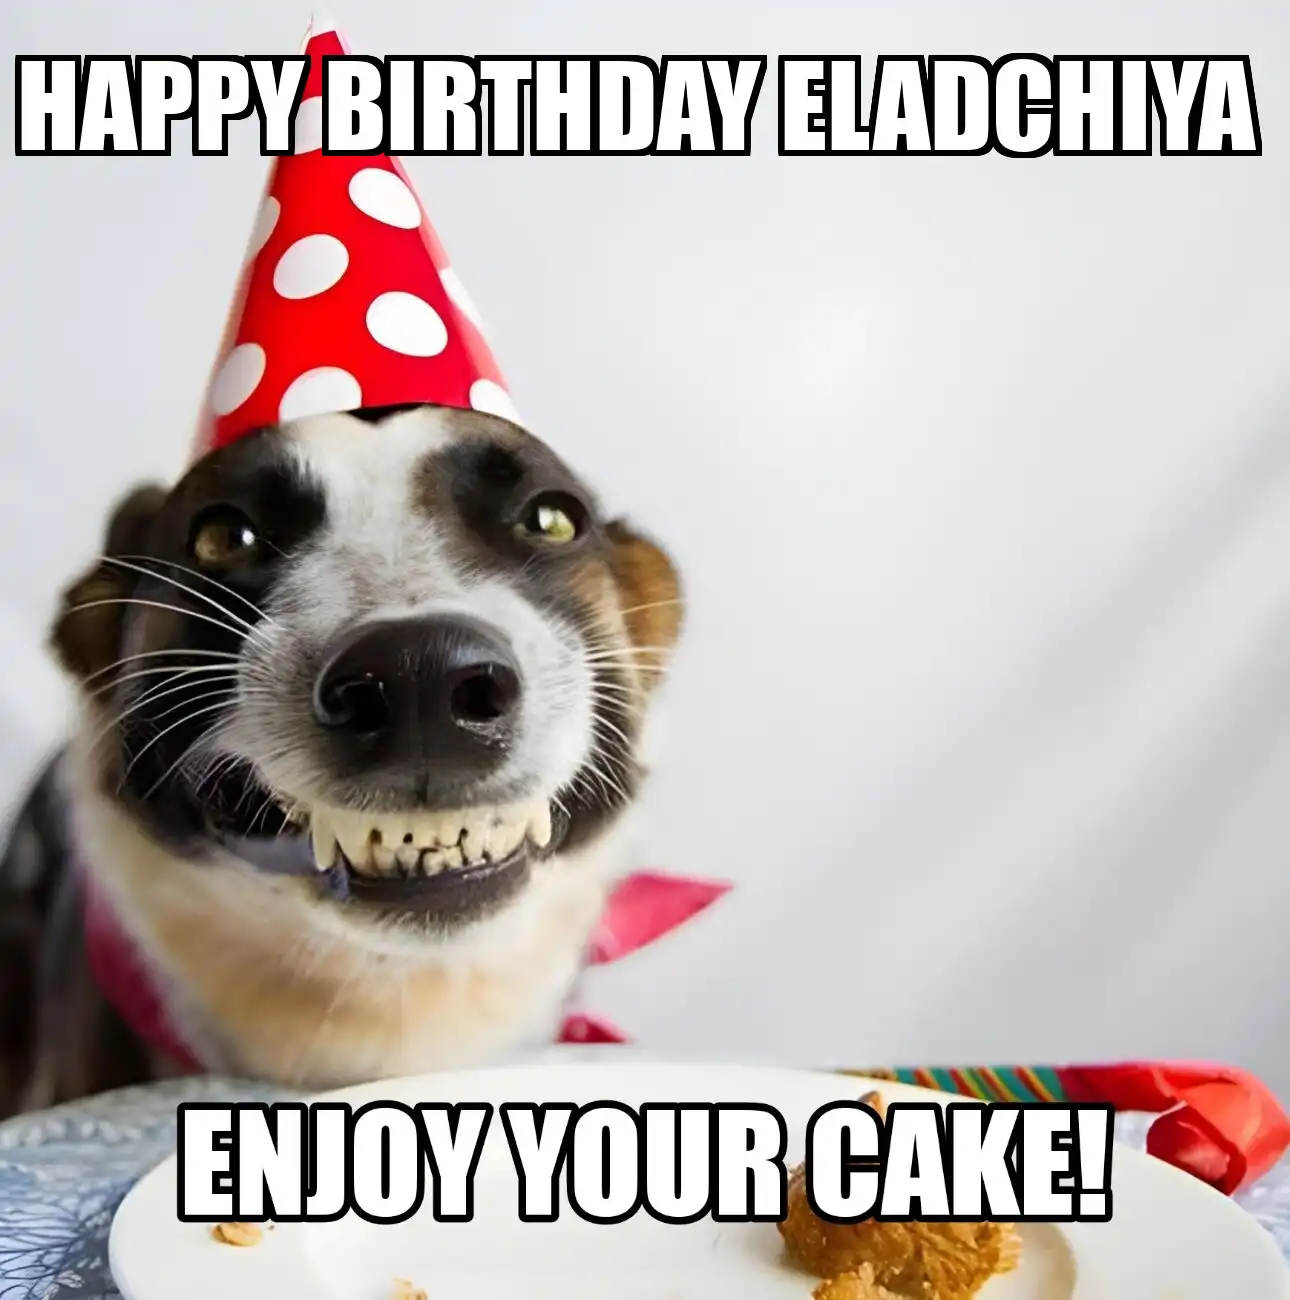 Happy Birthday Eladchiya Enjoy Your Cake Dog Meme